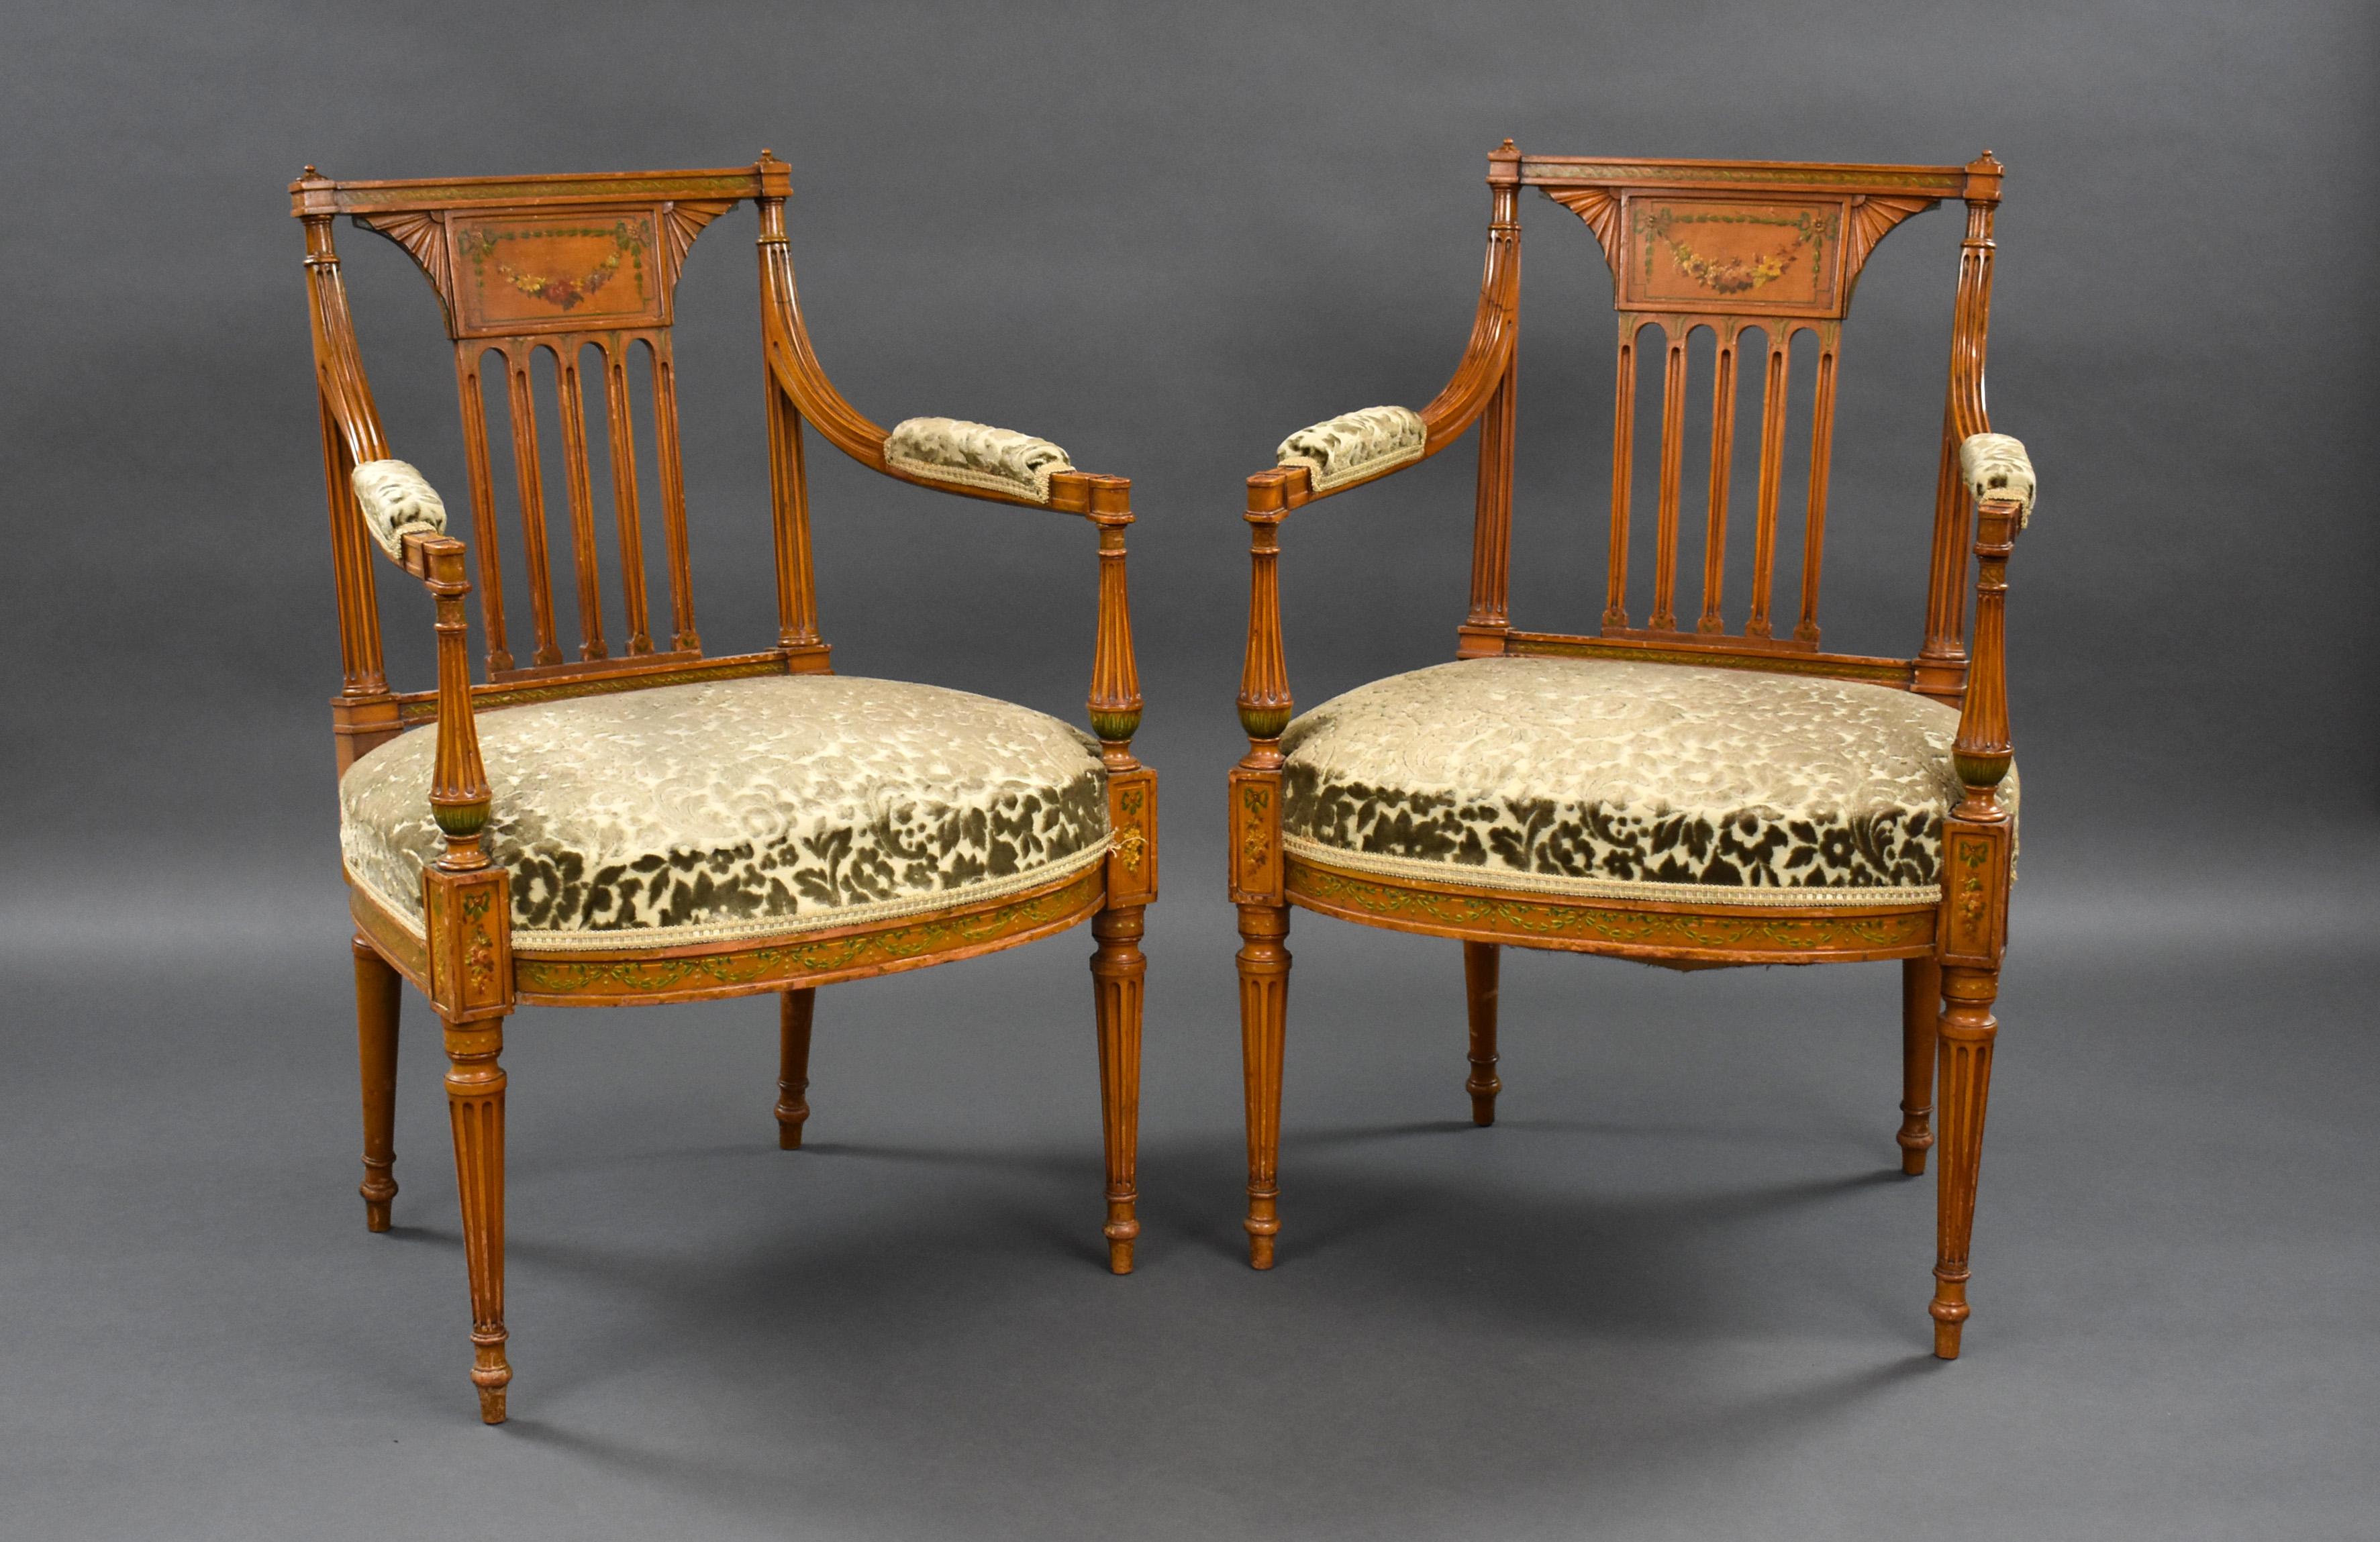 Pour la vente est une paire de bonne qualité Edwardian Satinwood fauteuils peints à la main. Chaque chaise a un dossier en tablette et un siège rembourré reposant sur des pieds cannelés. Les deux chaises sont en très bon état pour leur âge.